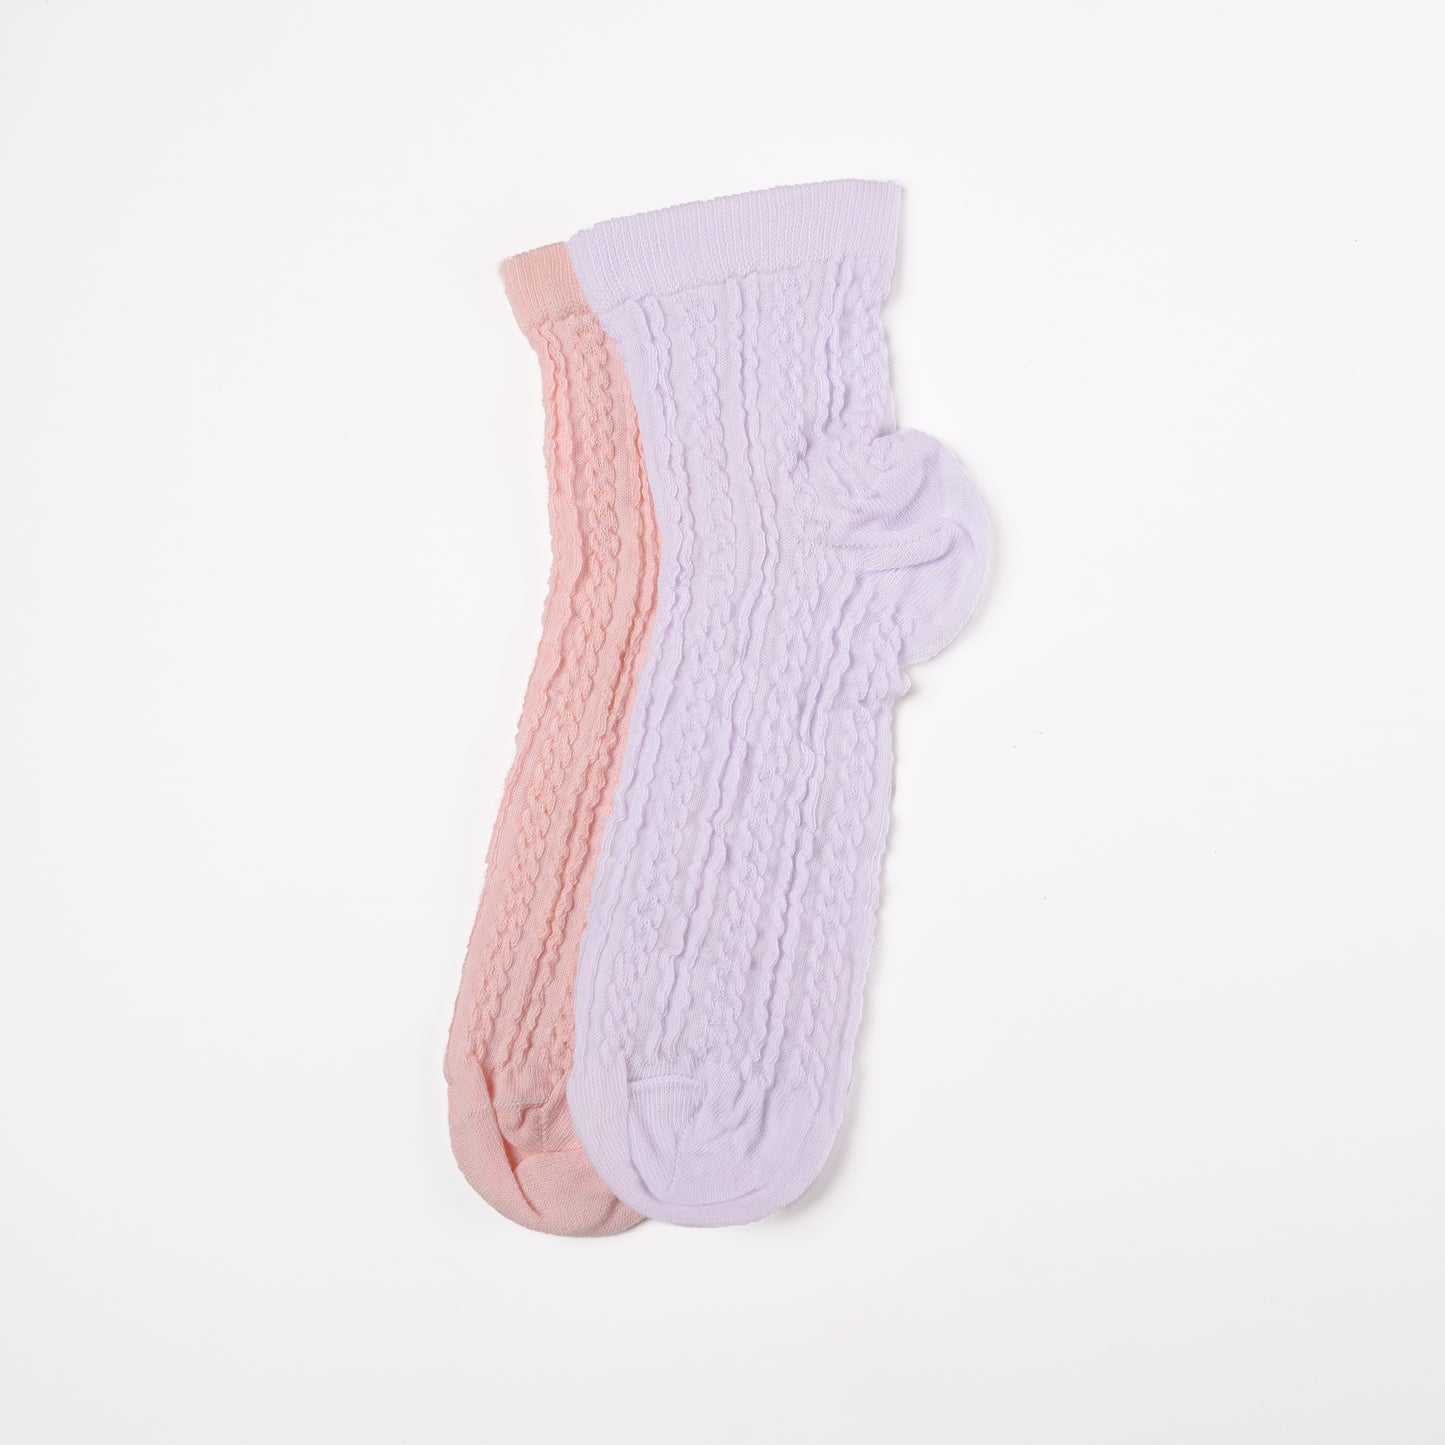 Elegant Ankle Socks pack of 2